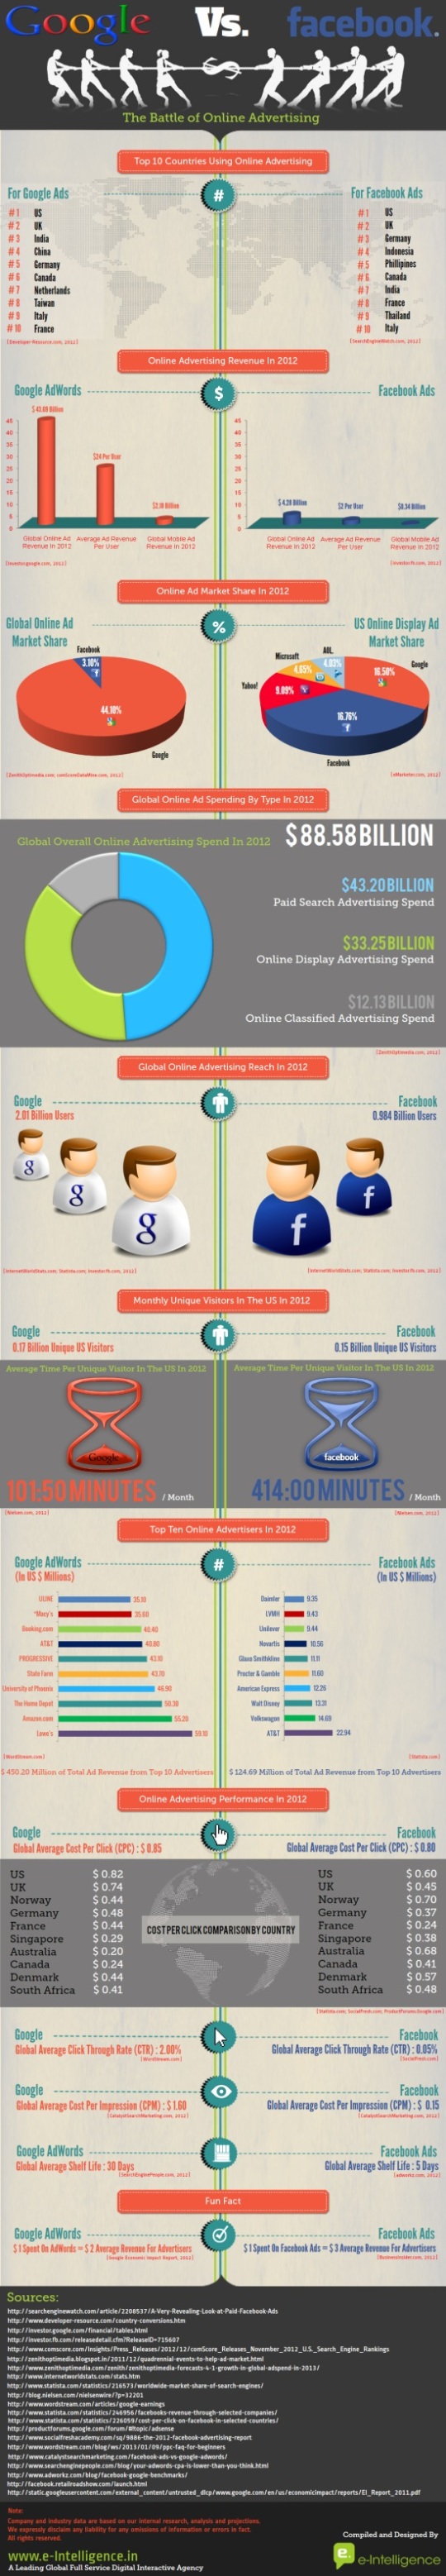 google-vs-facebook-advertising